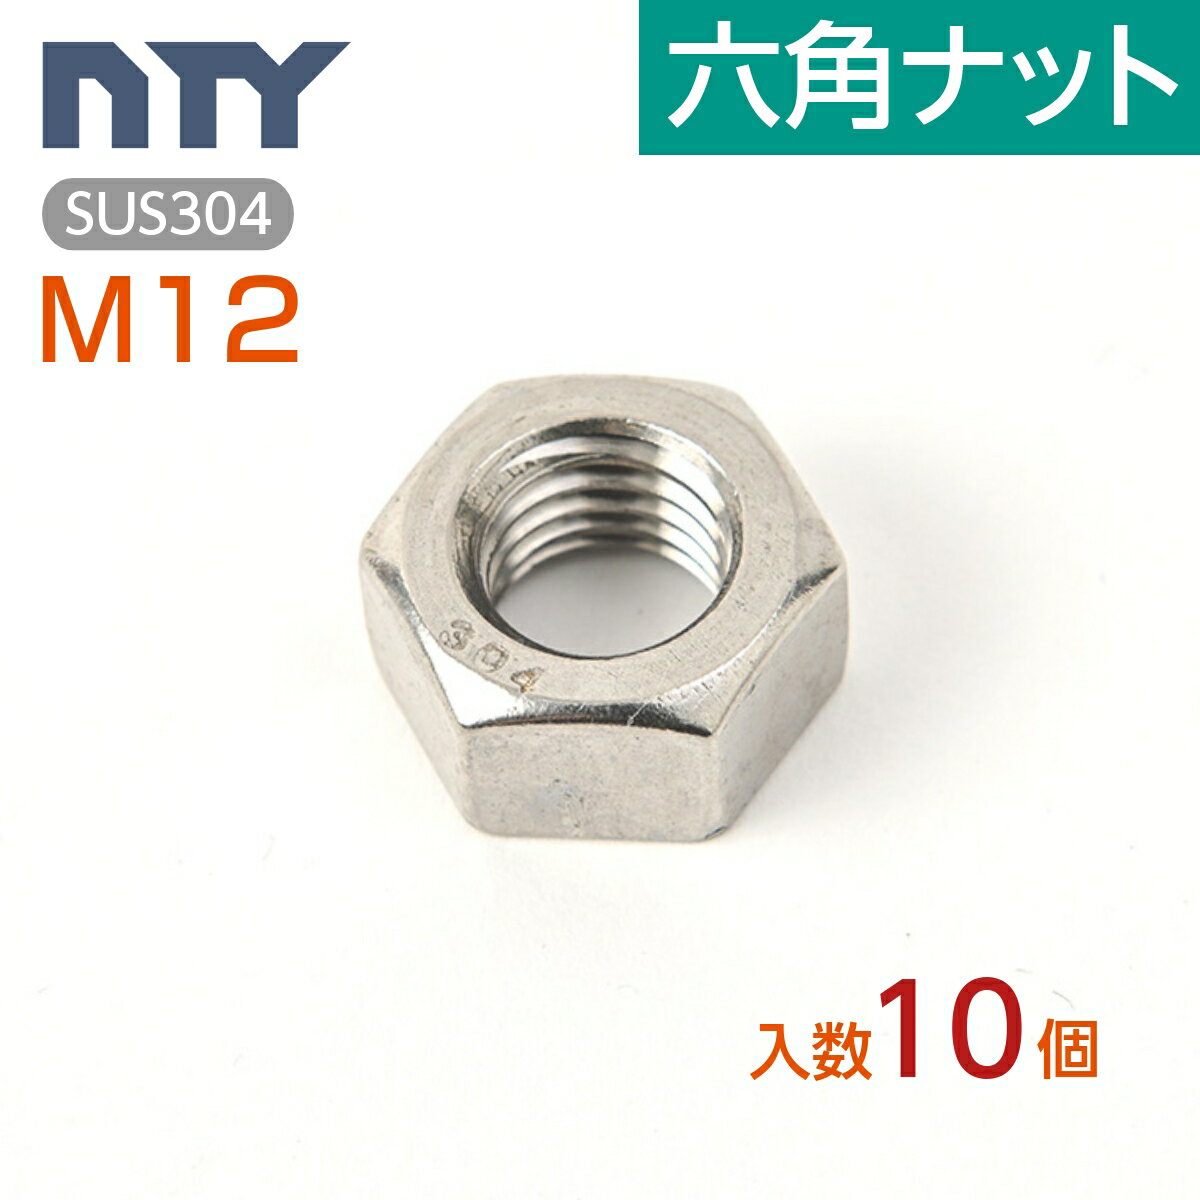 六角ナット M12 10個 1種 並目 厚み:10mm 二面幅:19mm SUS304 ステンレス ナット 修理 DIY 補強 部品